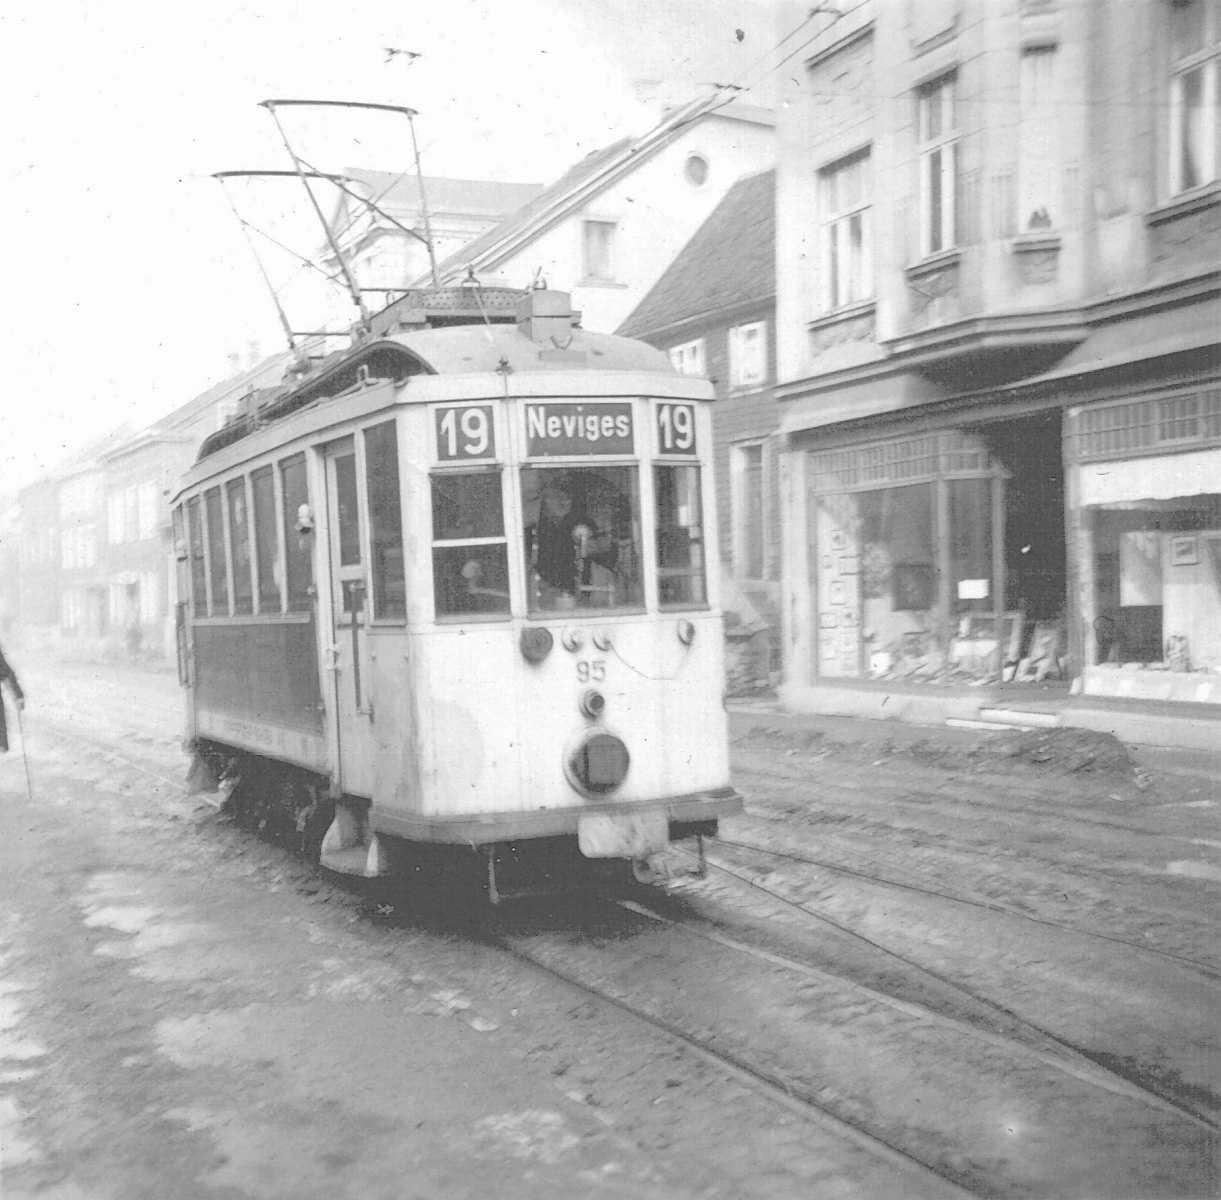 WuppertalerStrassenbahn/Tram_Wuppertal_Wagen95_Linie19_Neviges_mit_Scheinwerfer-Verdunkelung_um_1940